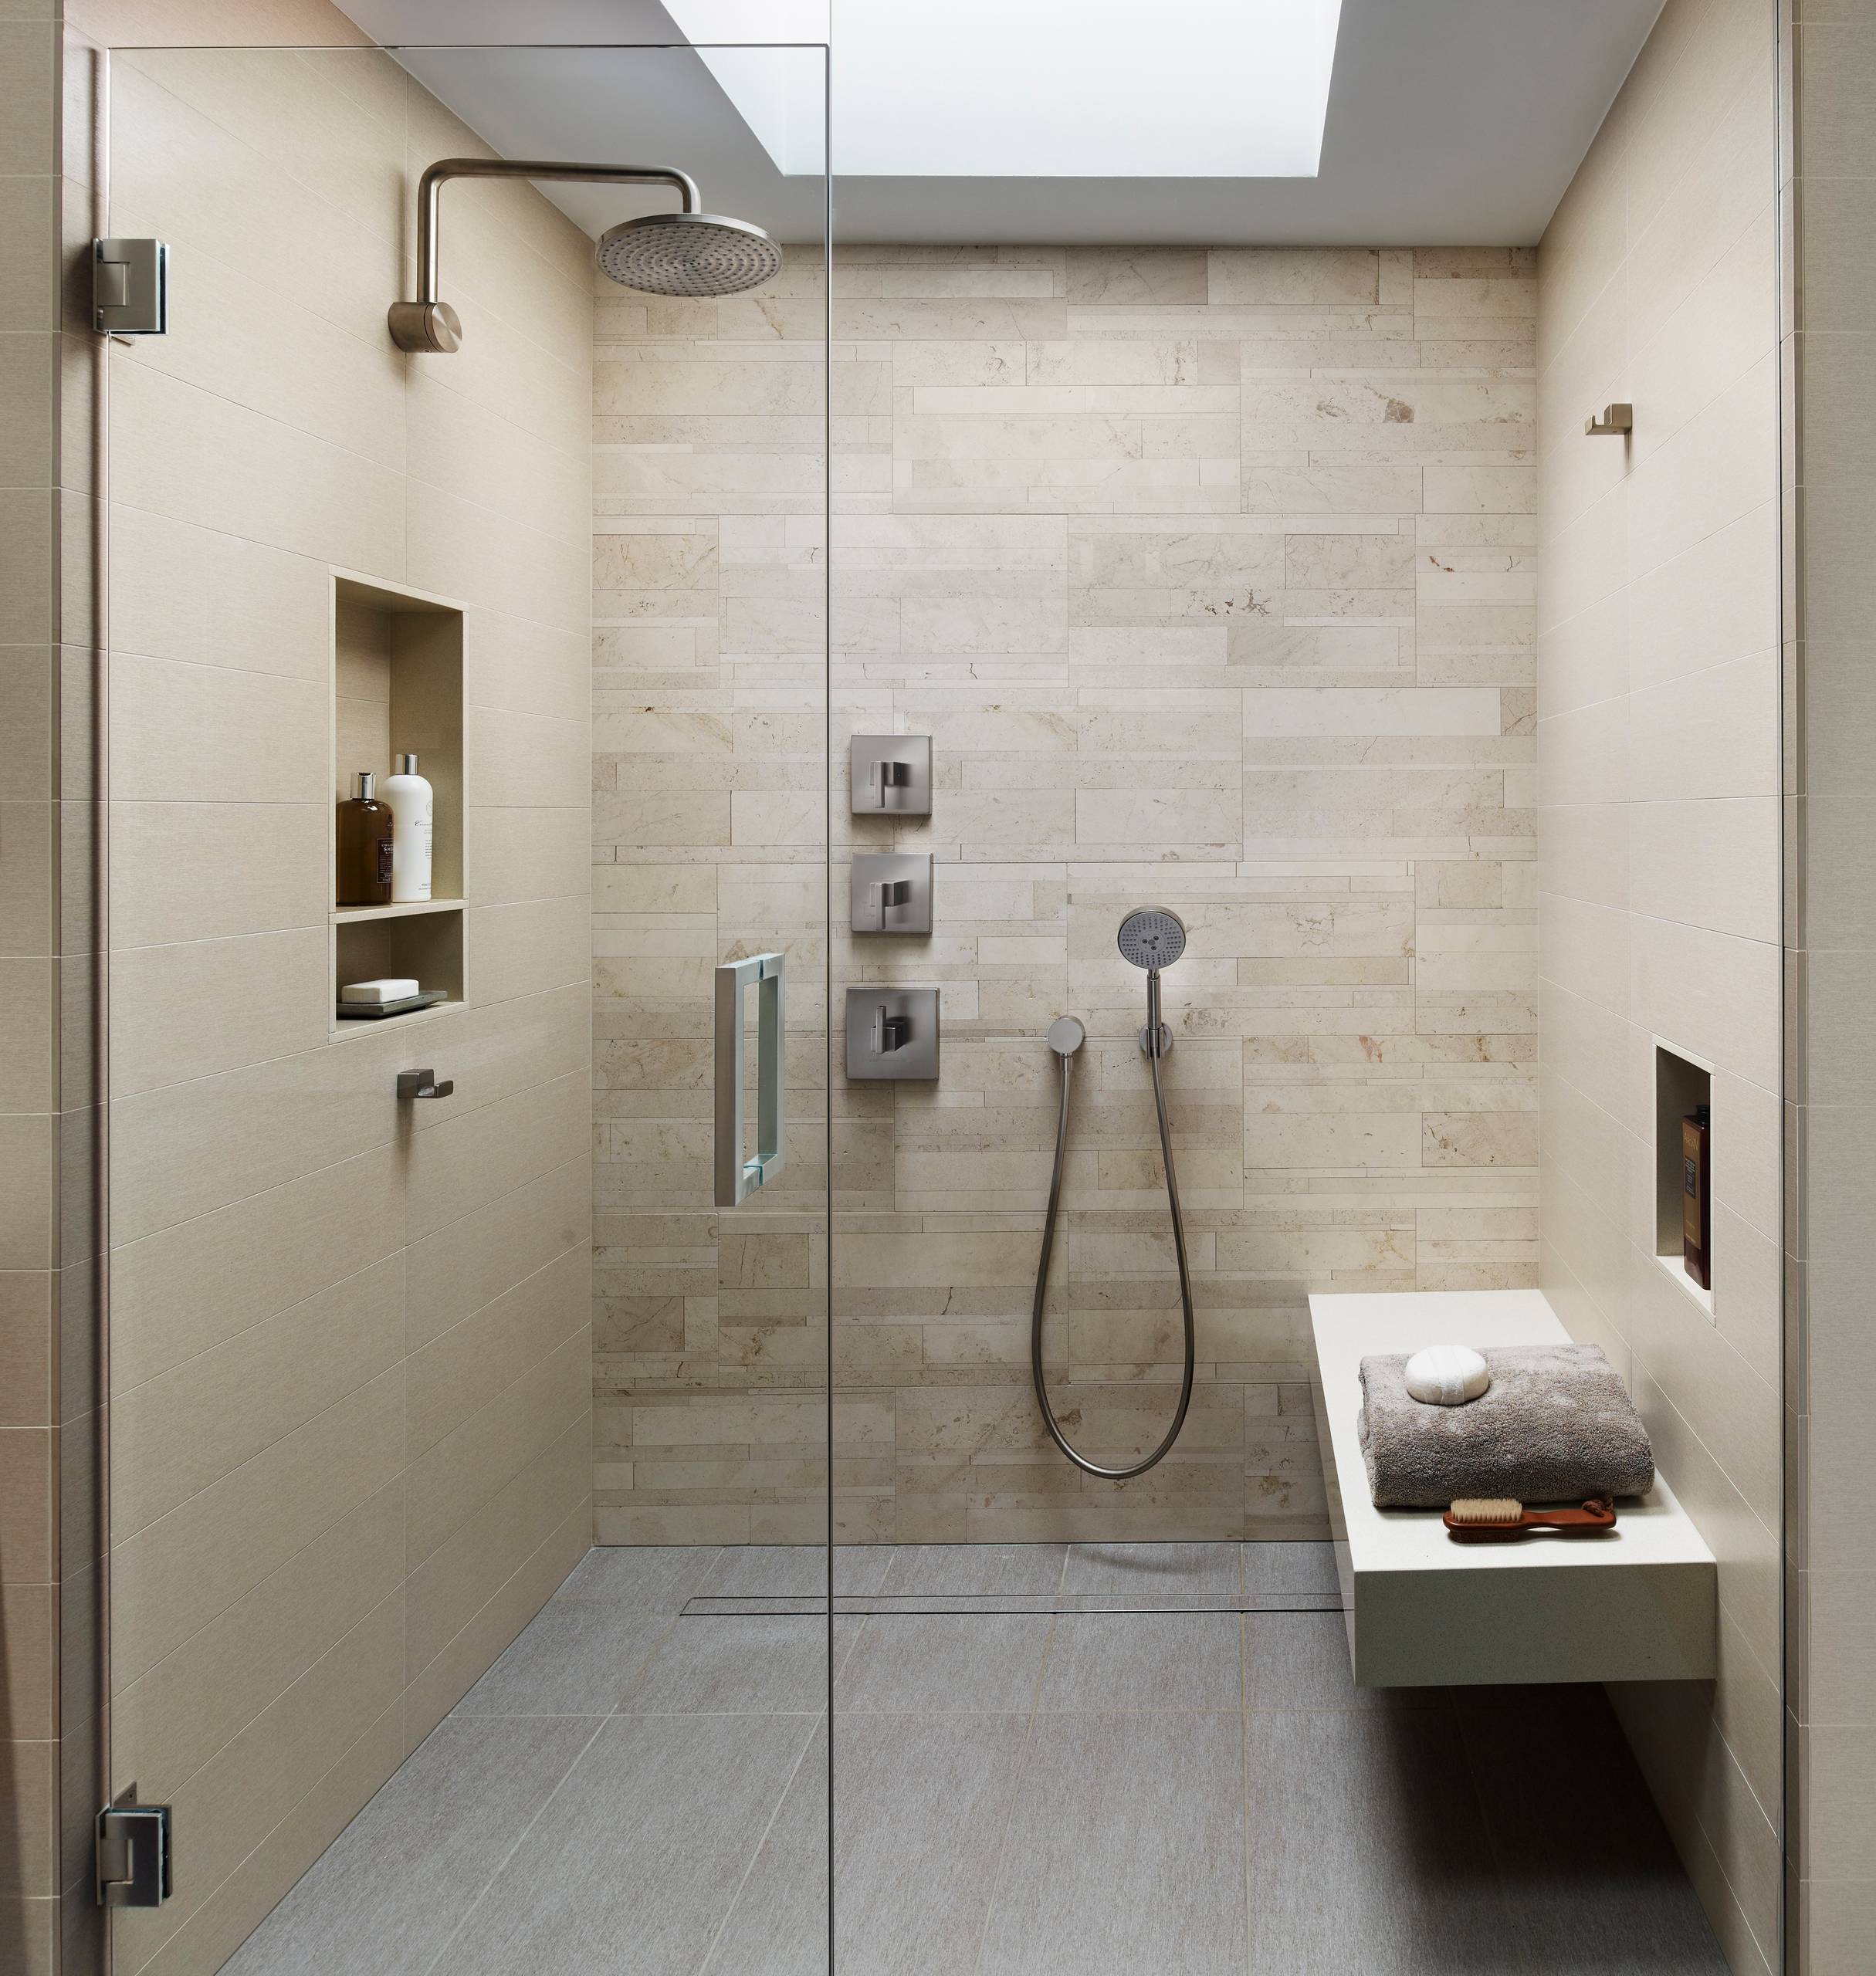 Shower douche. Ванная комната с душем. Современная ванная с душем. Стильные душевые комнаты. Стильная душевая комната.